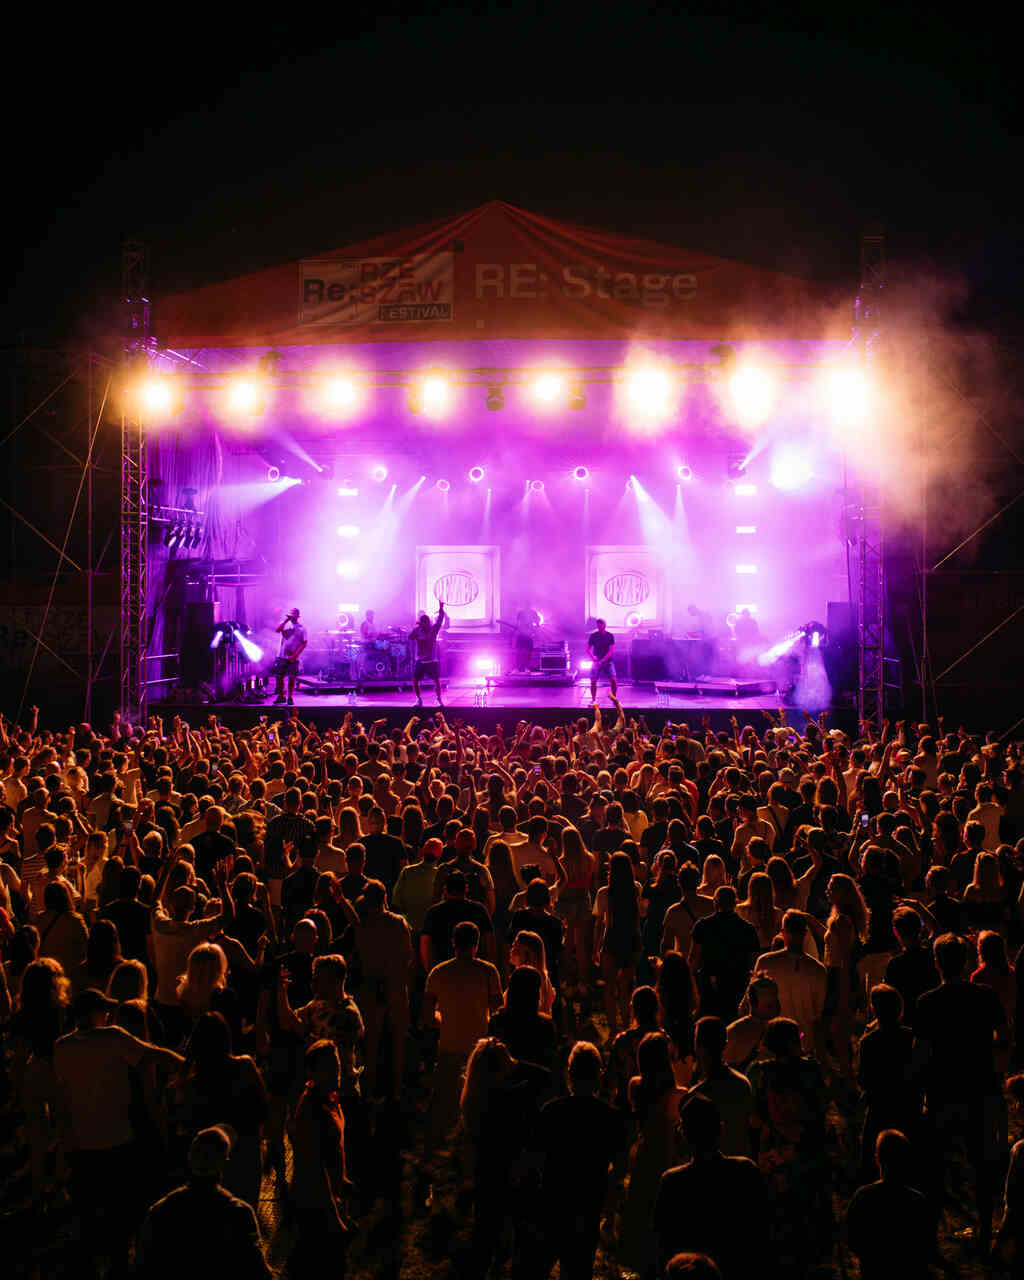 RE Rzeszów Festival, czyli muzyczne lato w stolicy Podkarpacia